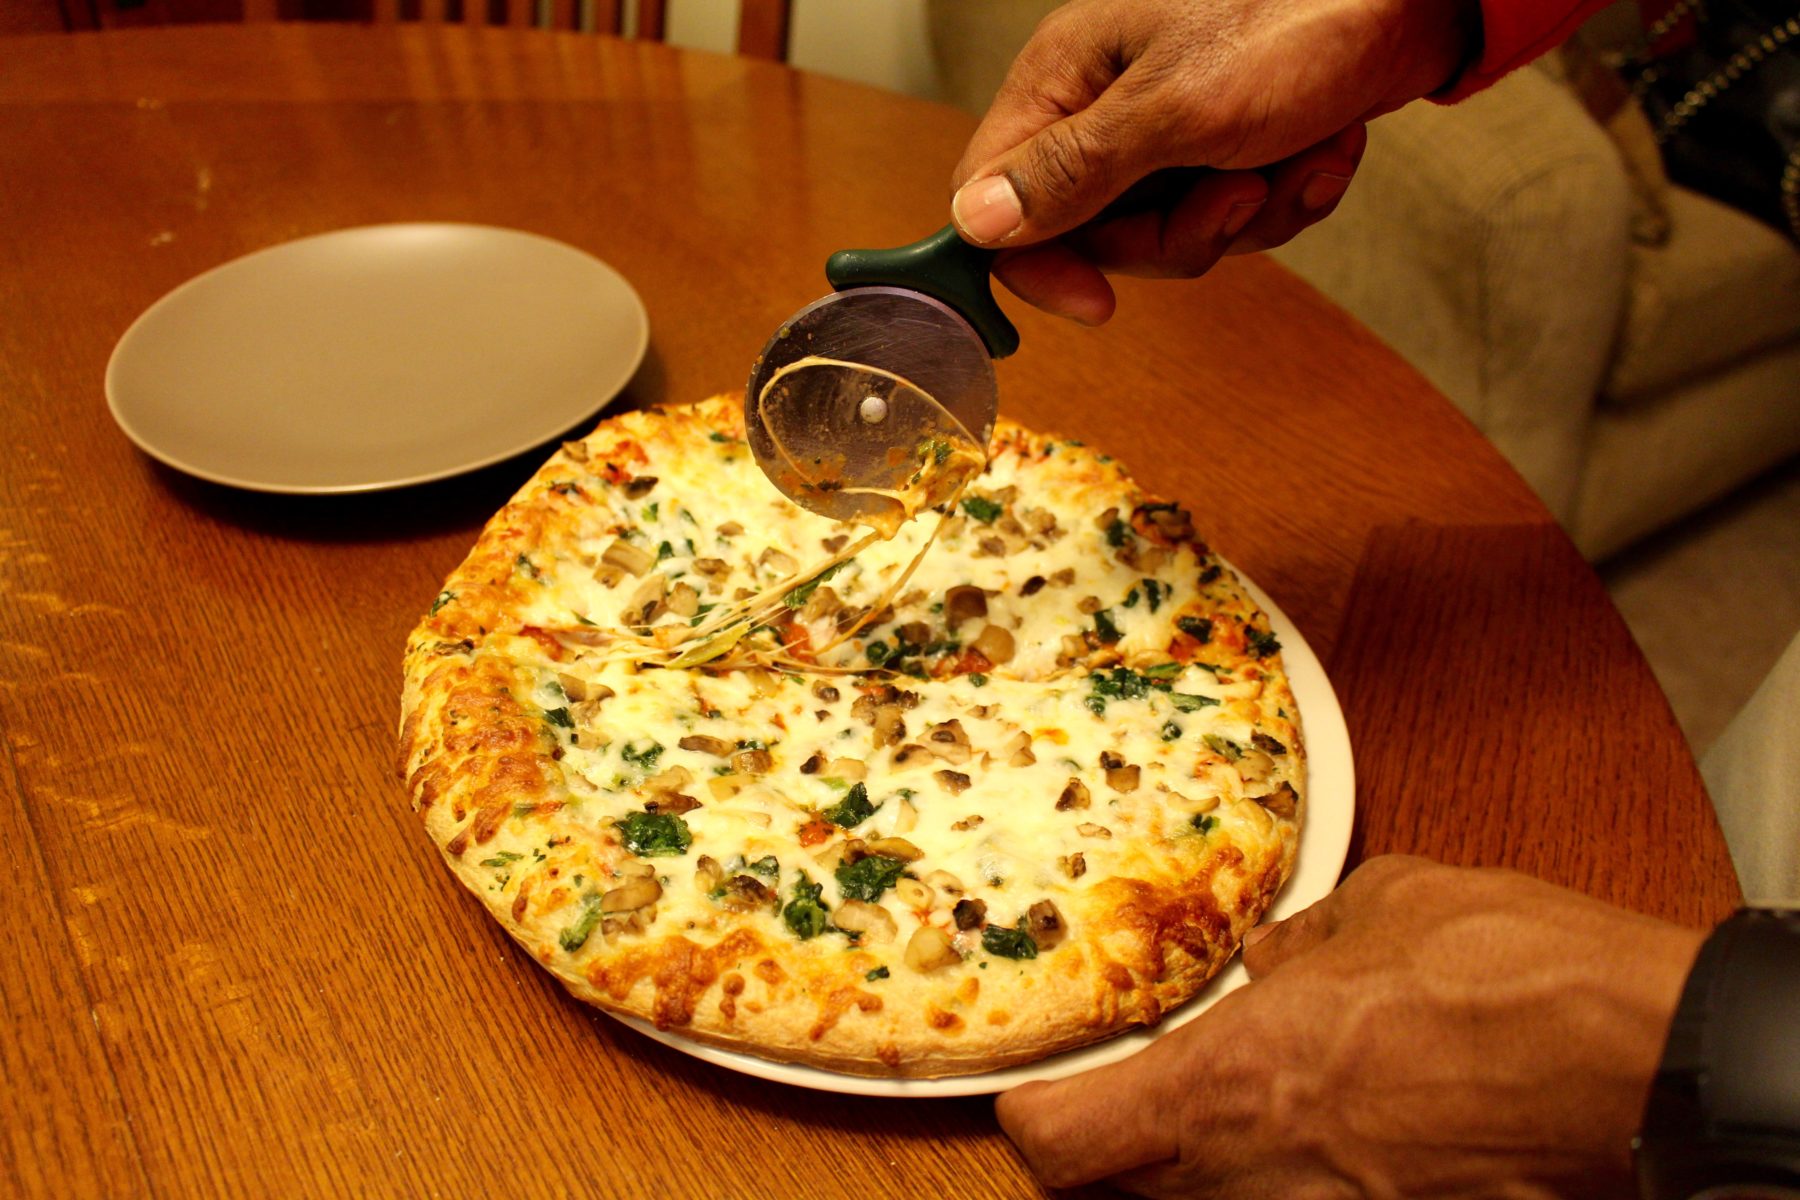 Digiorno spinach and mushroom pizza